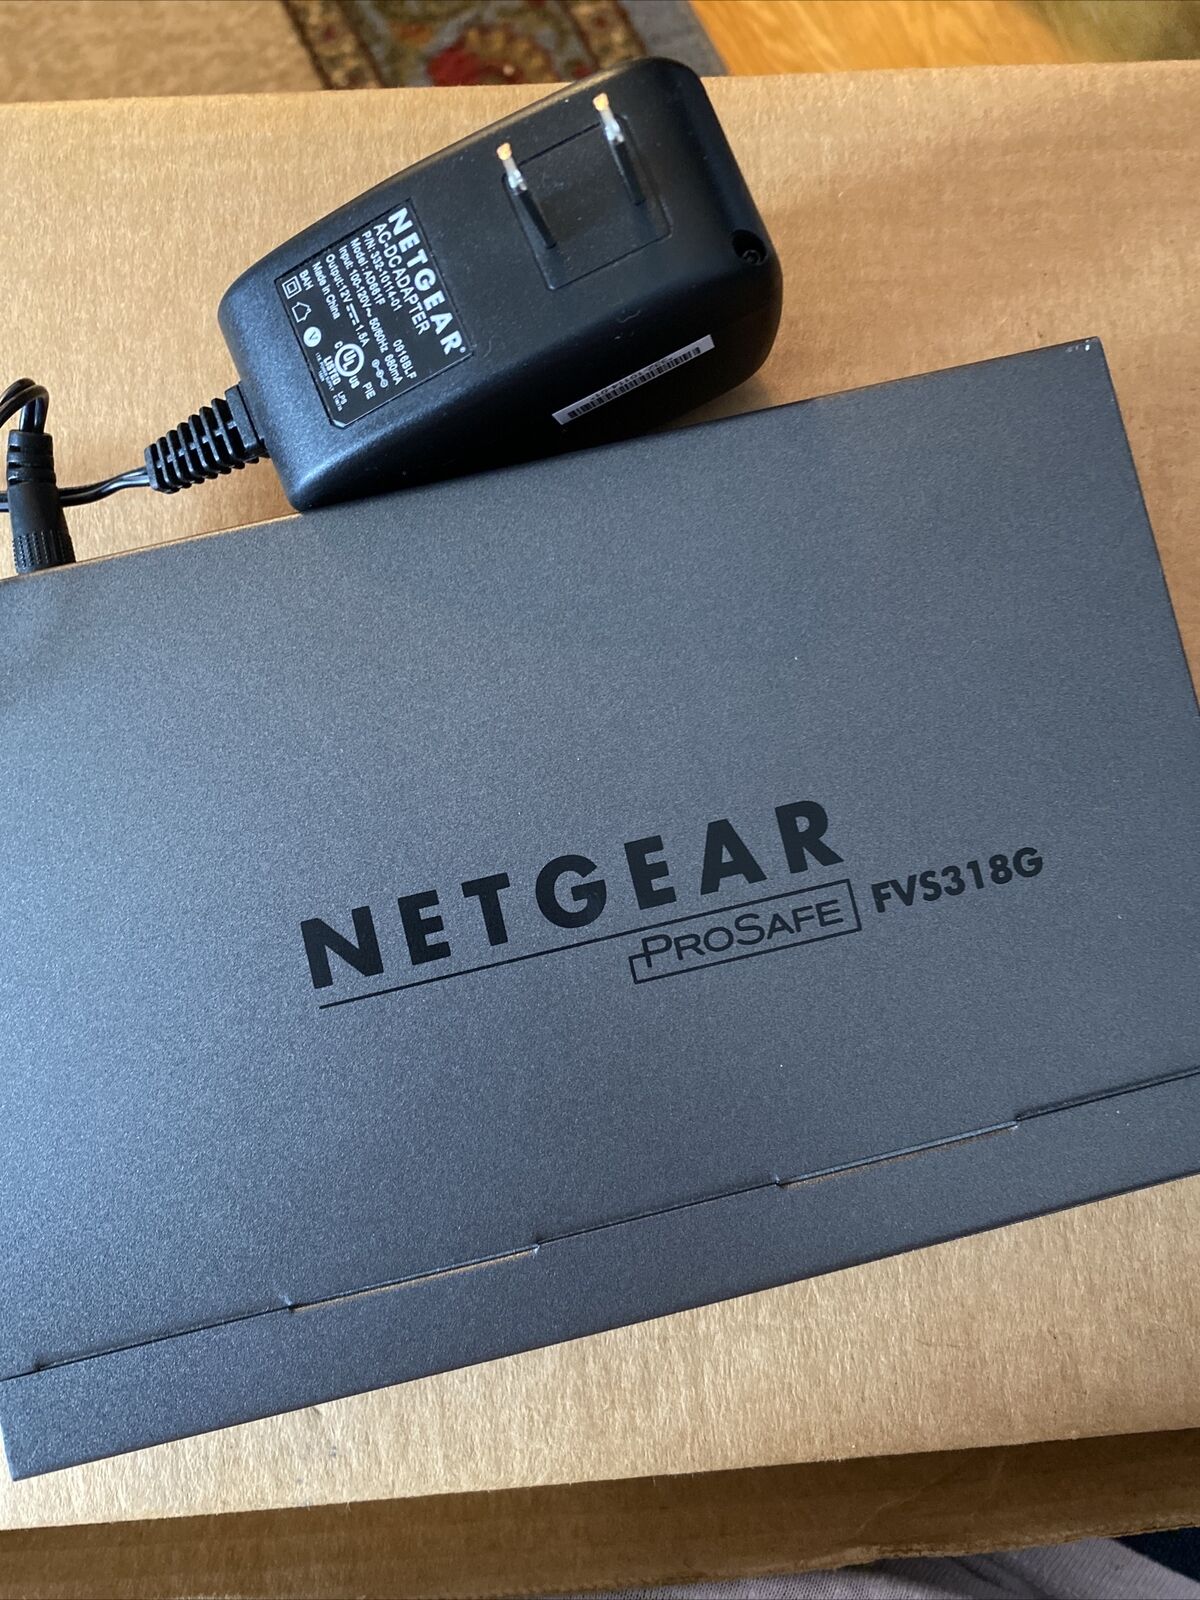 Netgear Firewall Prosafe Gigabit 8 Port VPN SZS318G